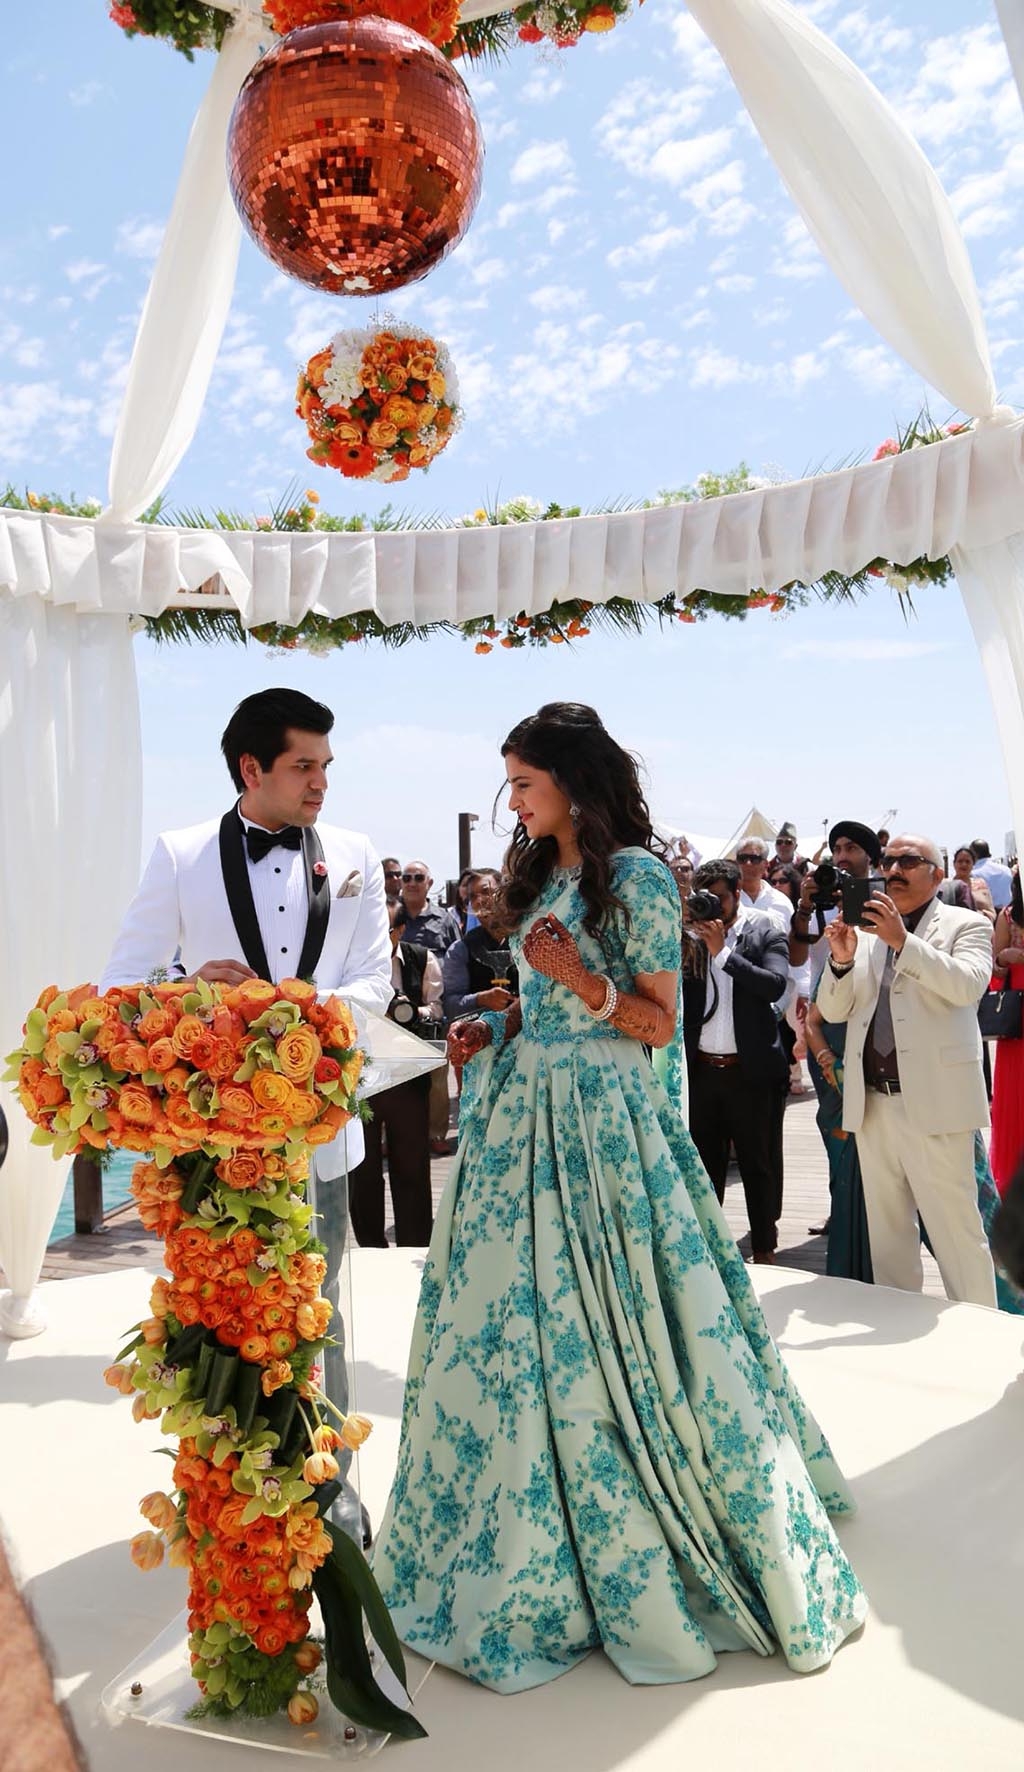 Hindu milyarder Antalya'da 10 milyon Euro'luk düğünle evleniyor